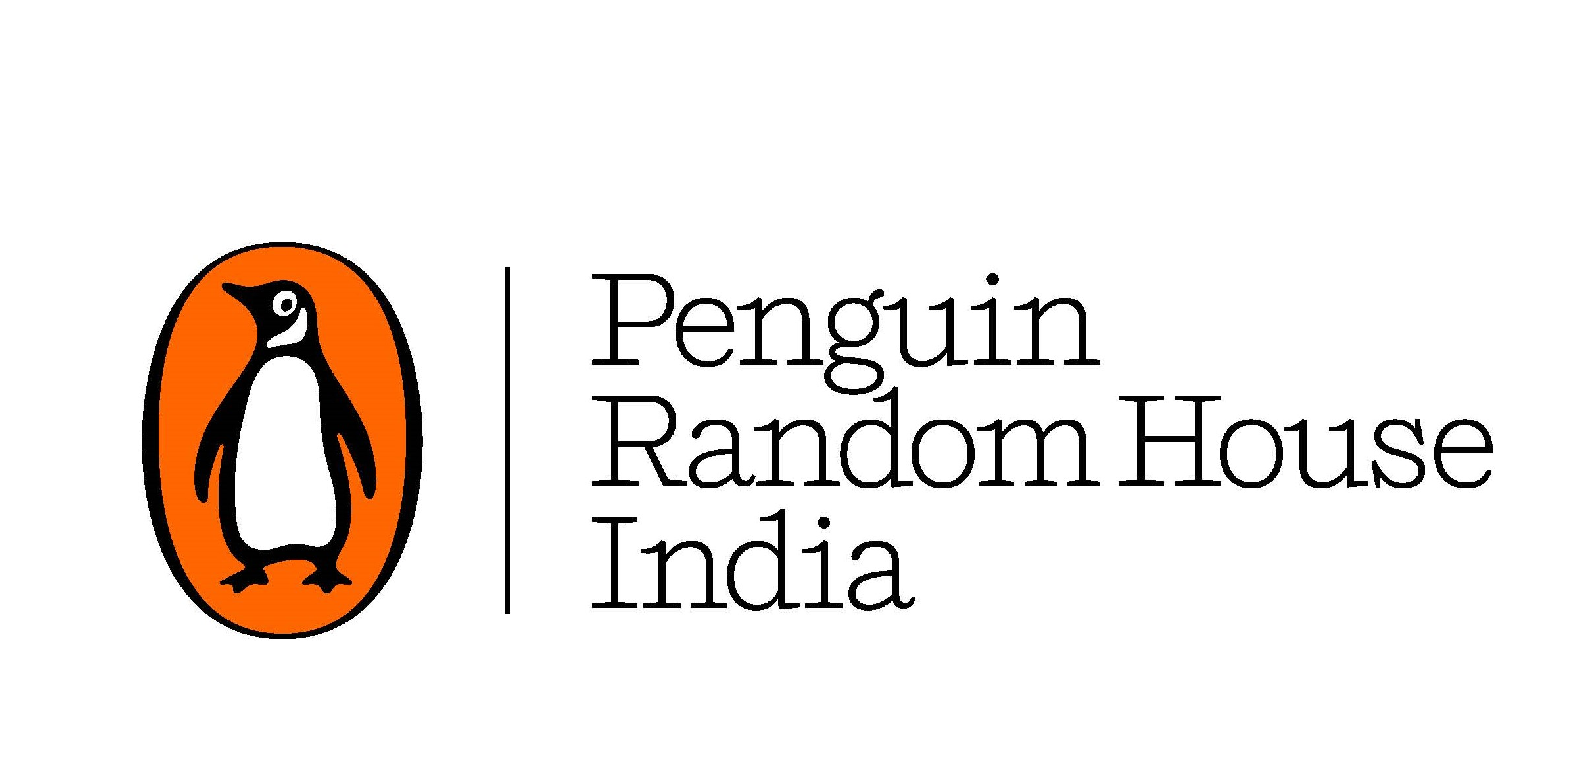 پینگوئن بھارت رتن لتا منگیشکر کی سوانح عمری شائع کرے گا